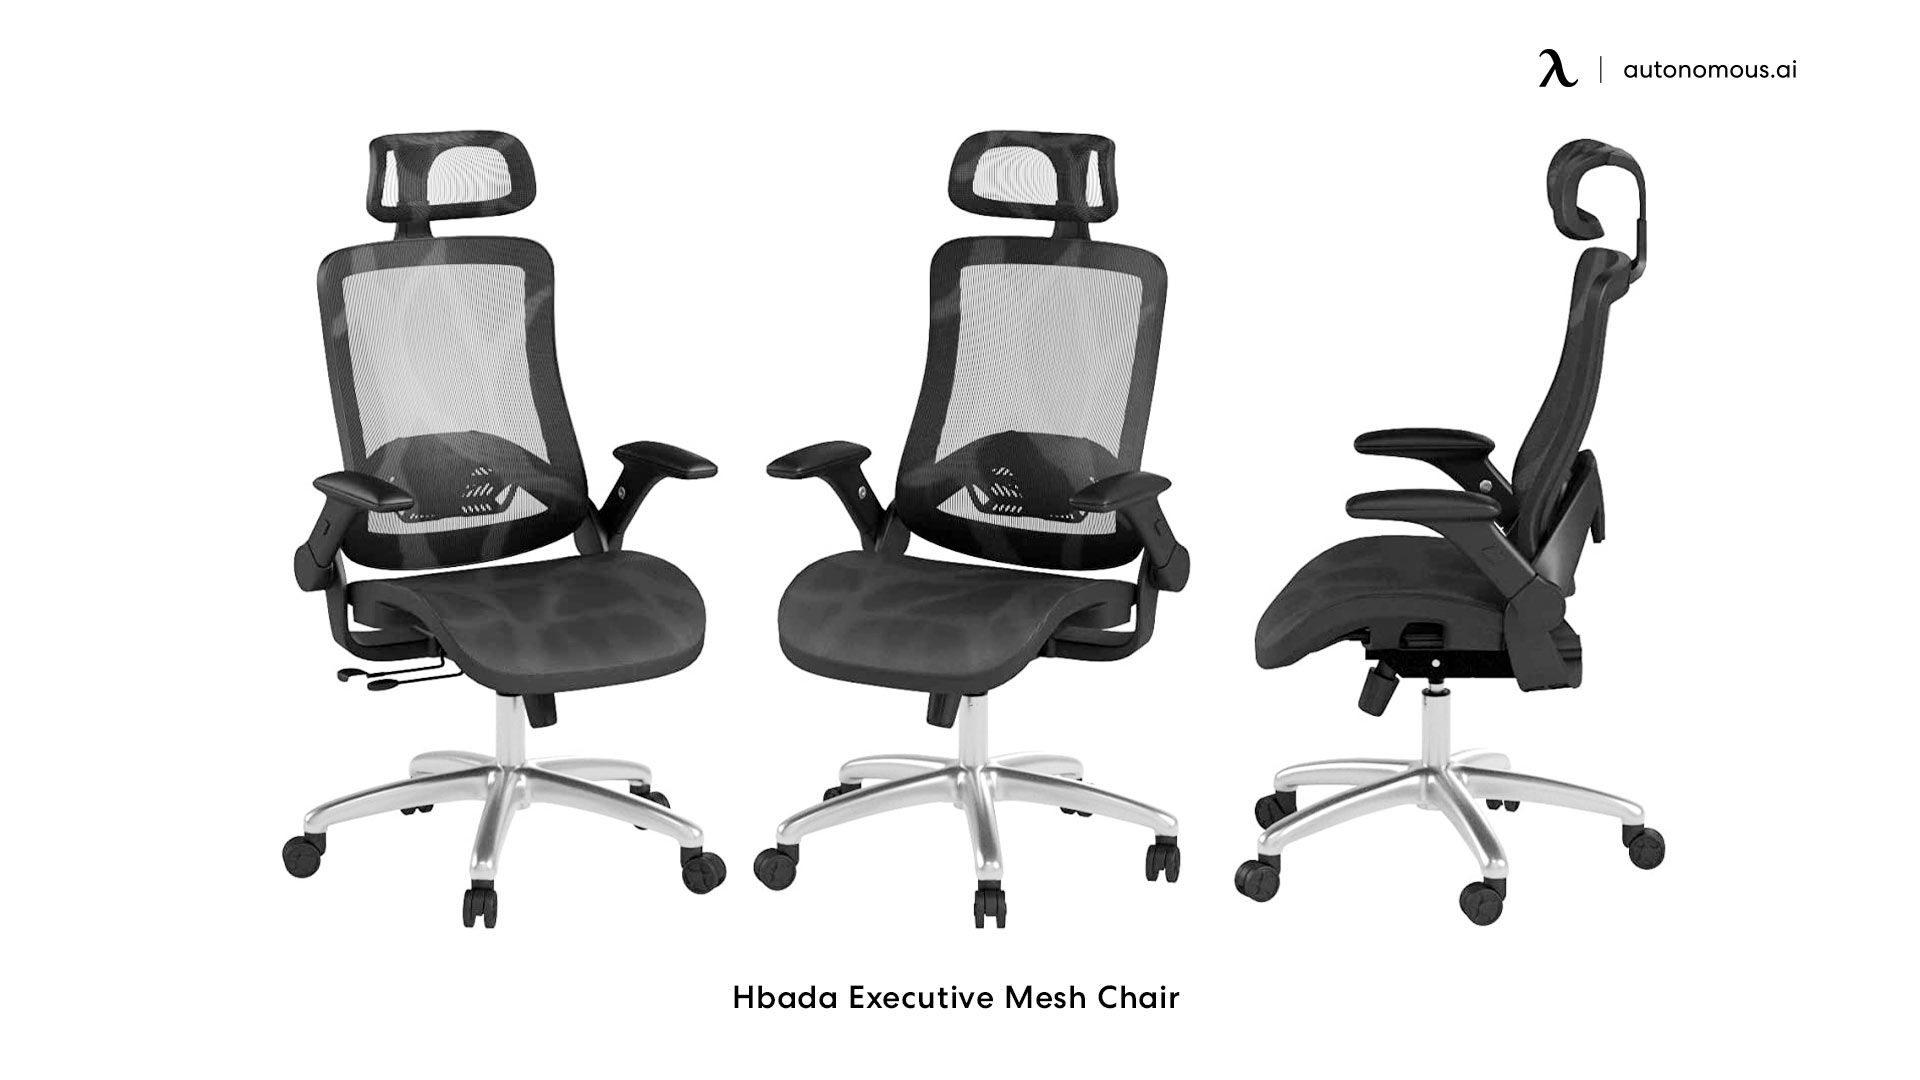 Hbada Executive Mesh Chair